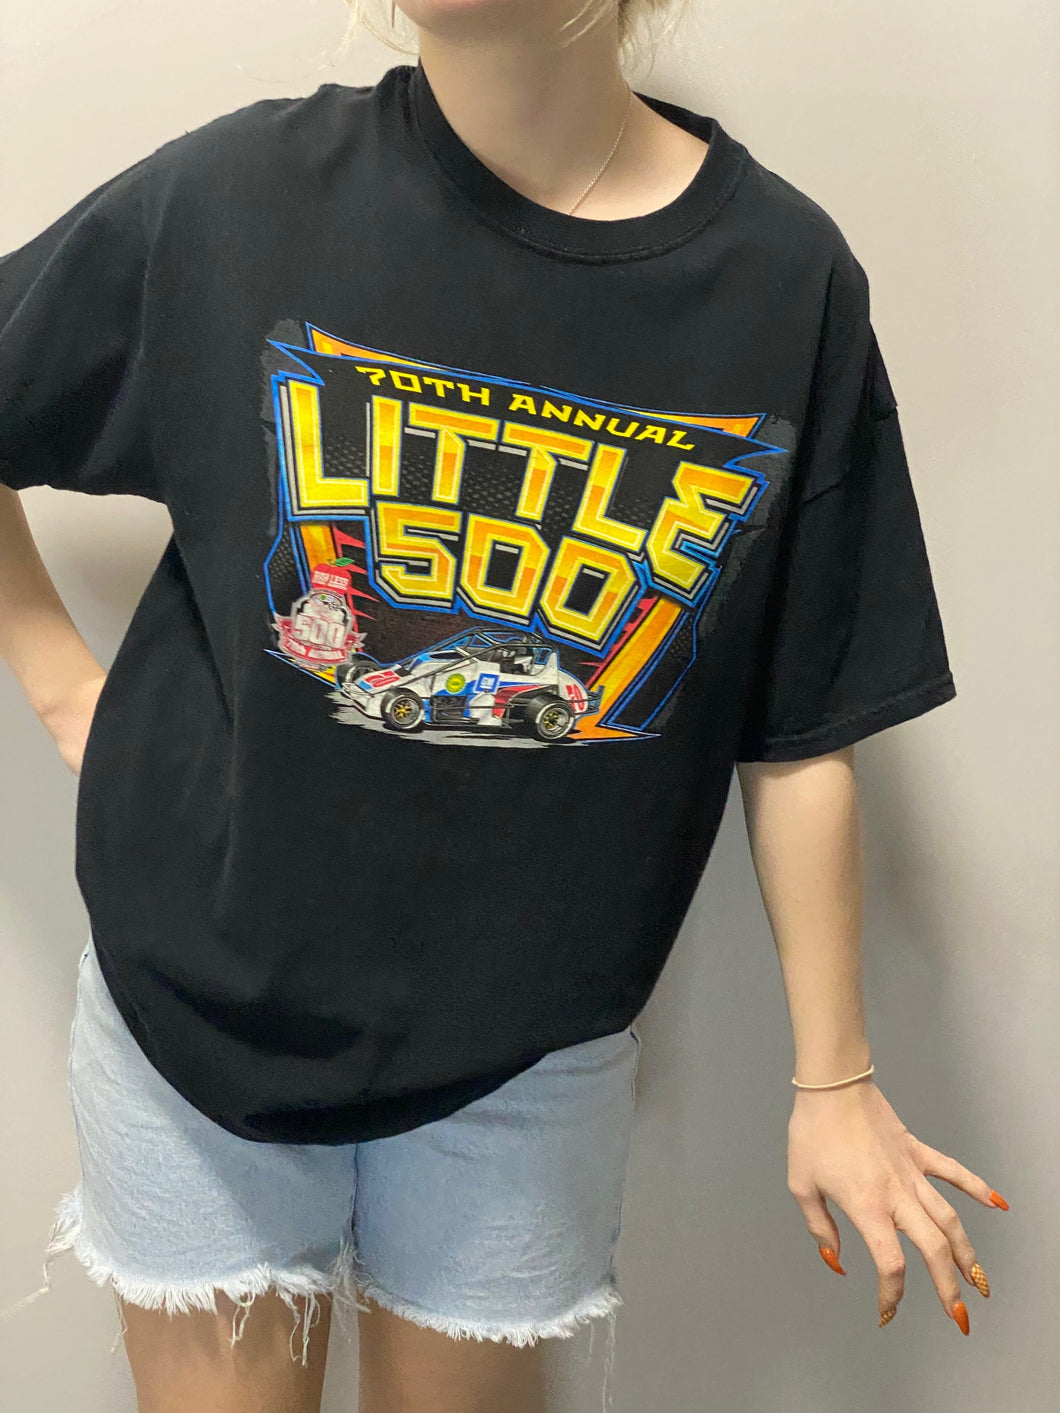 70th Annual Little 500 Black T-Shirt (L)